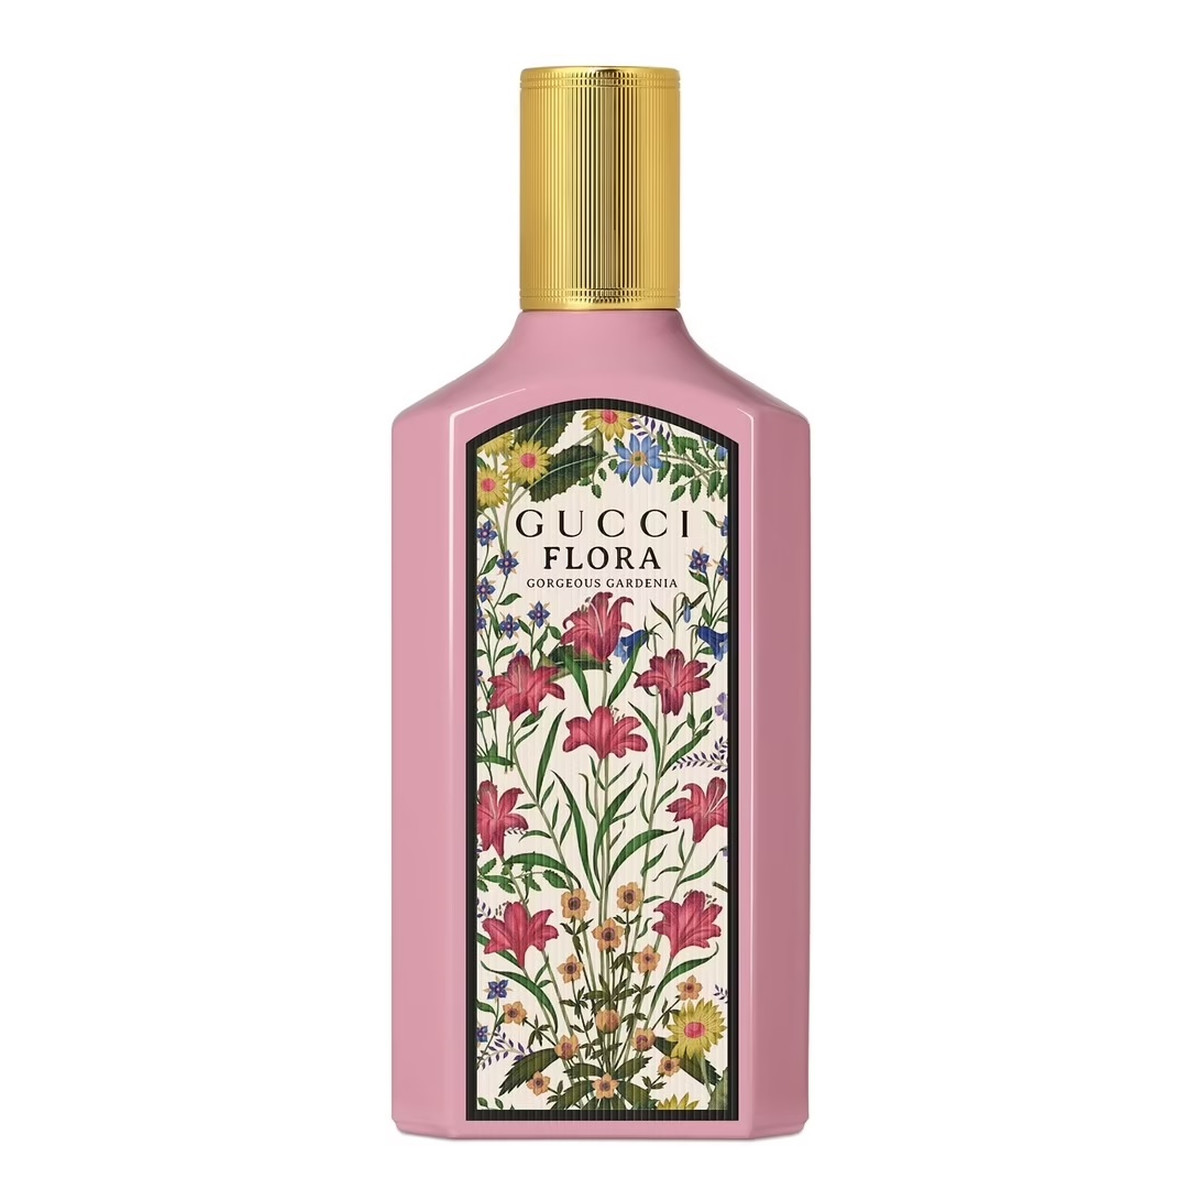 Gucci Flora Gorgeous Gardenia Woda perfumowana spray 100ml